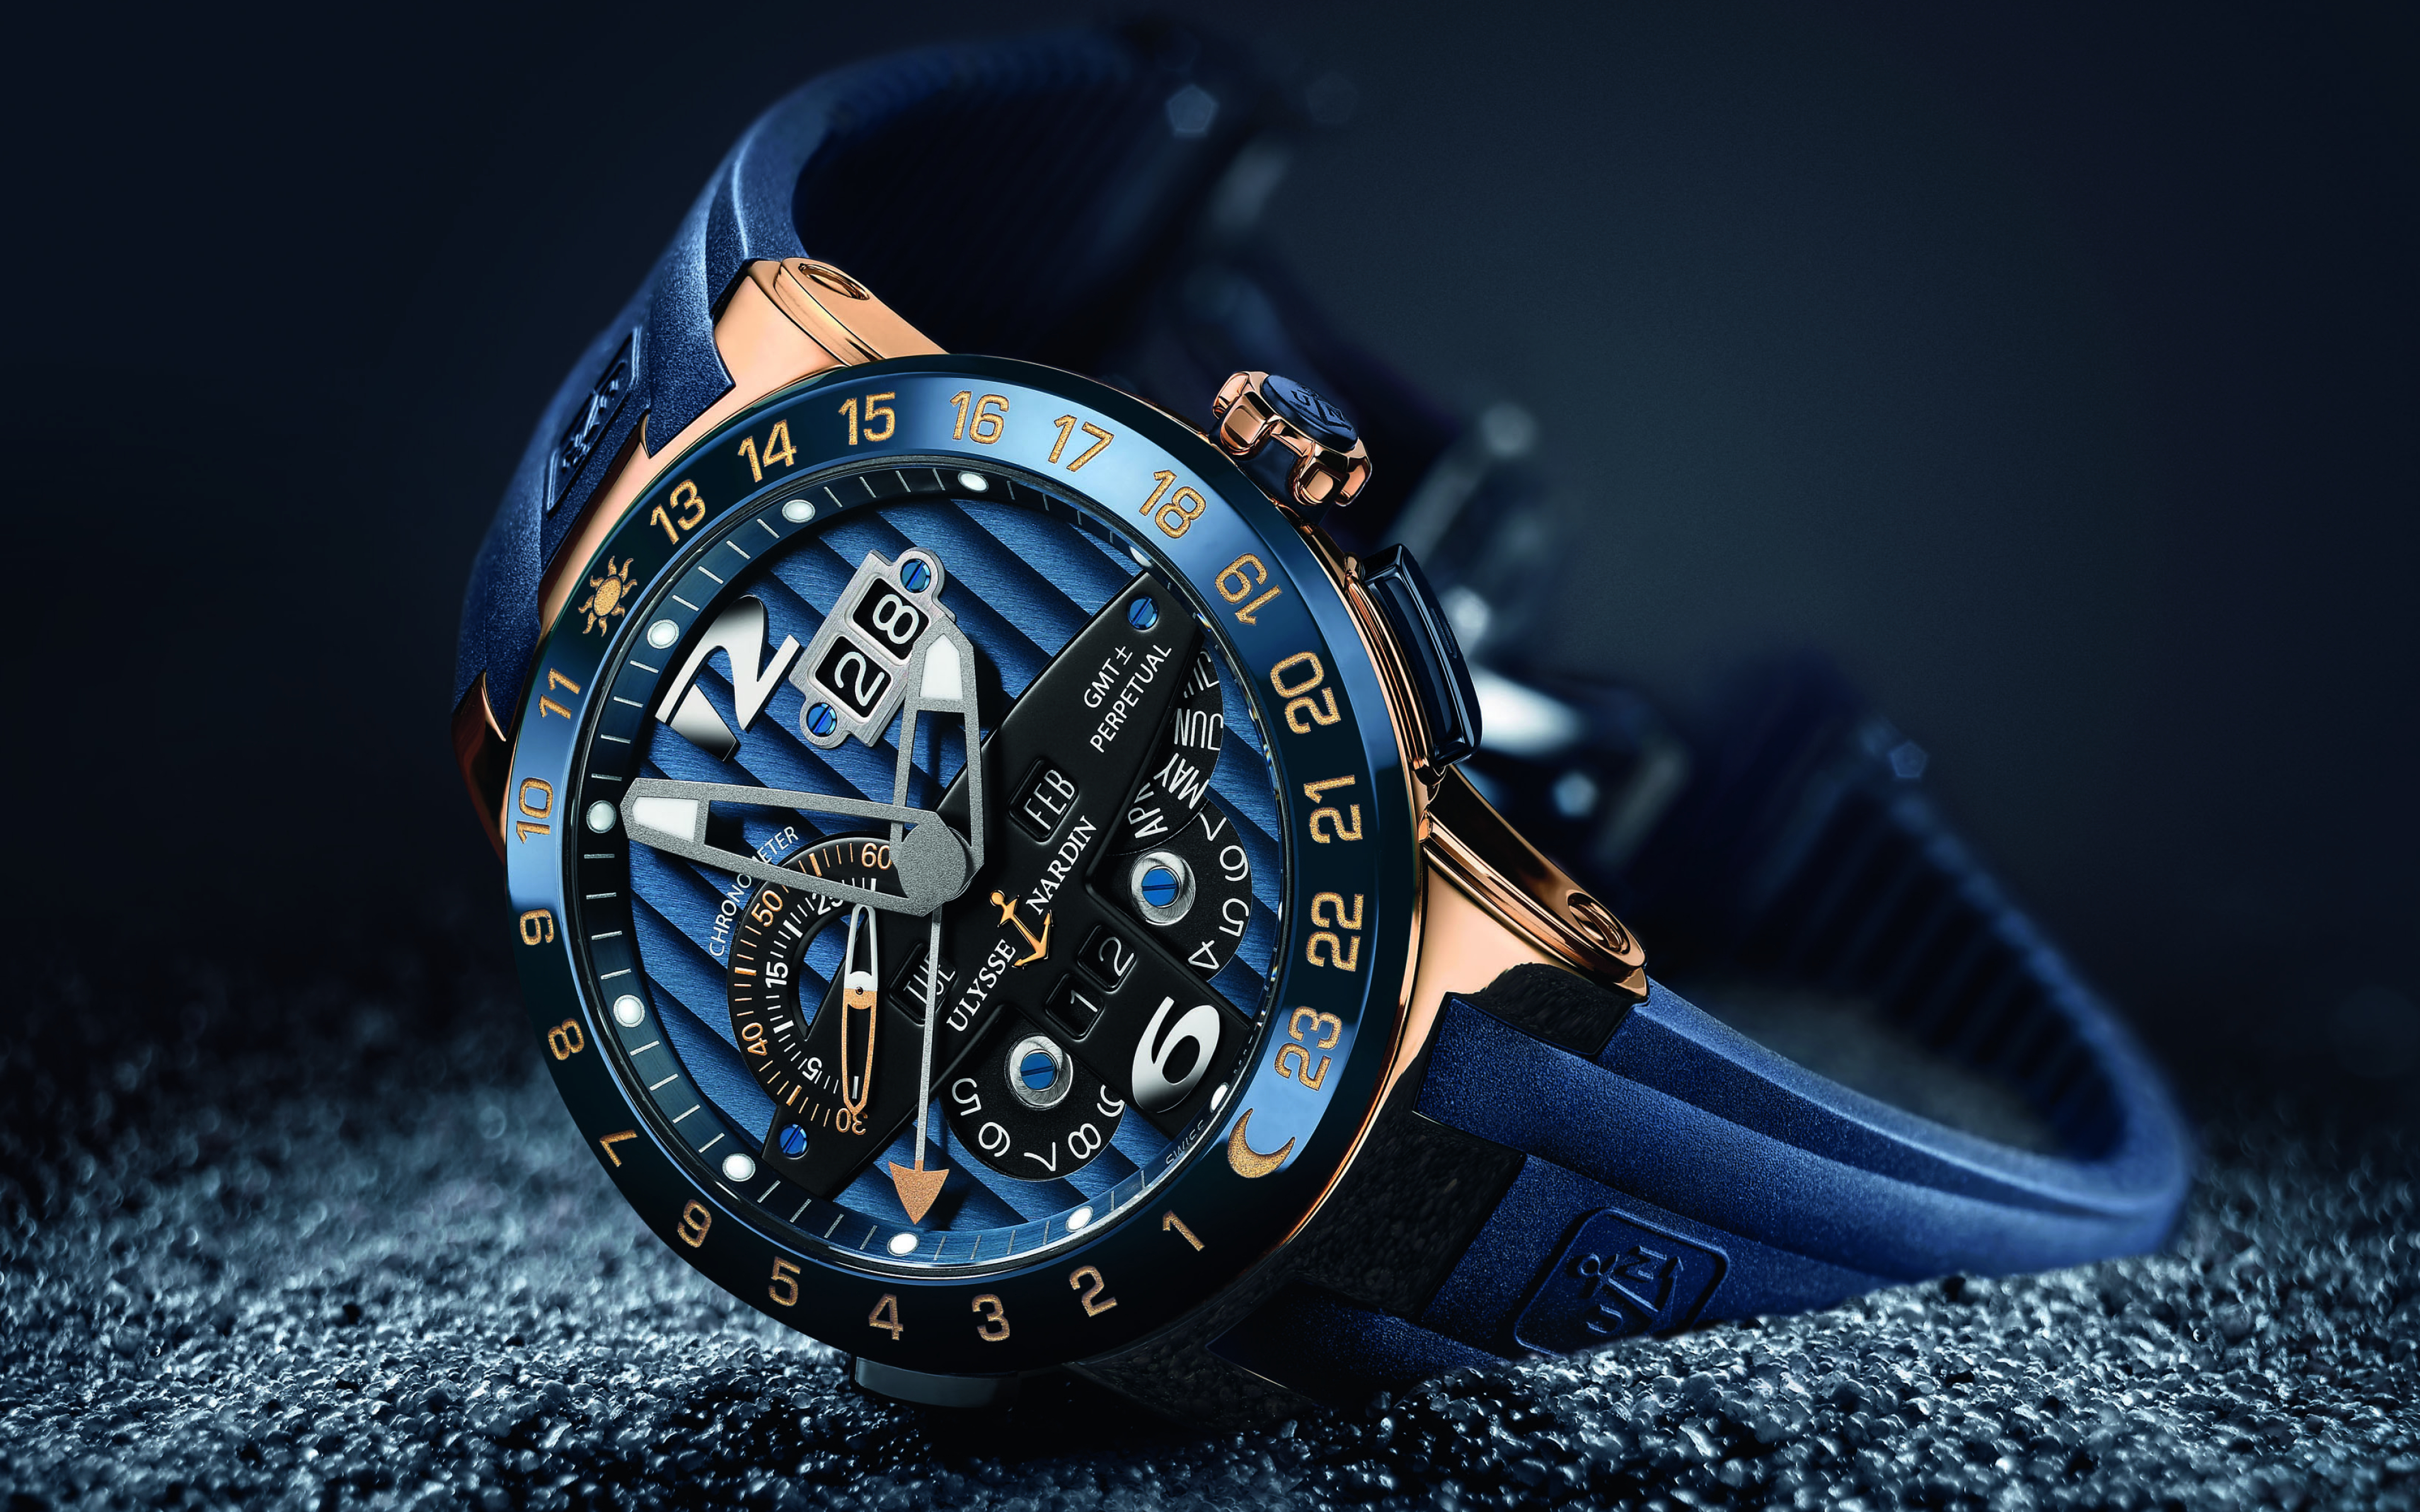 Фото обоев на часы. Часы Улисс Нордин. Улисс Нордин часы мужские. Швейцарские часы мужские Ulysse Nardin. Часы Луис Нардин синие.